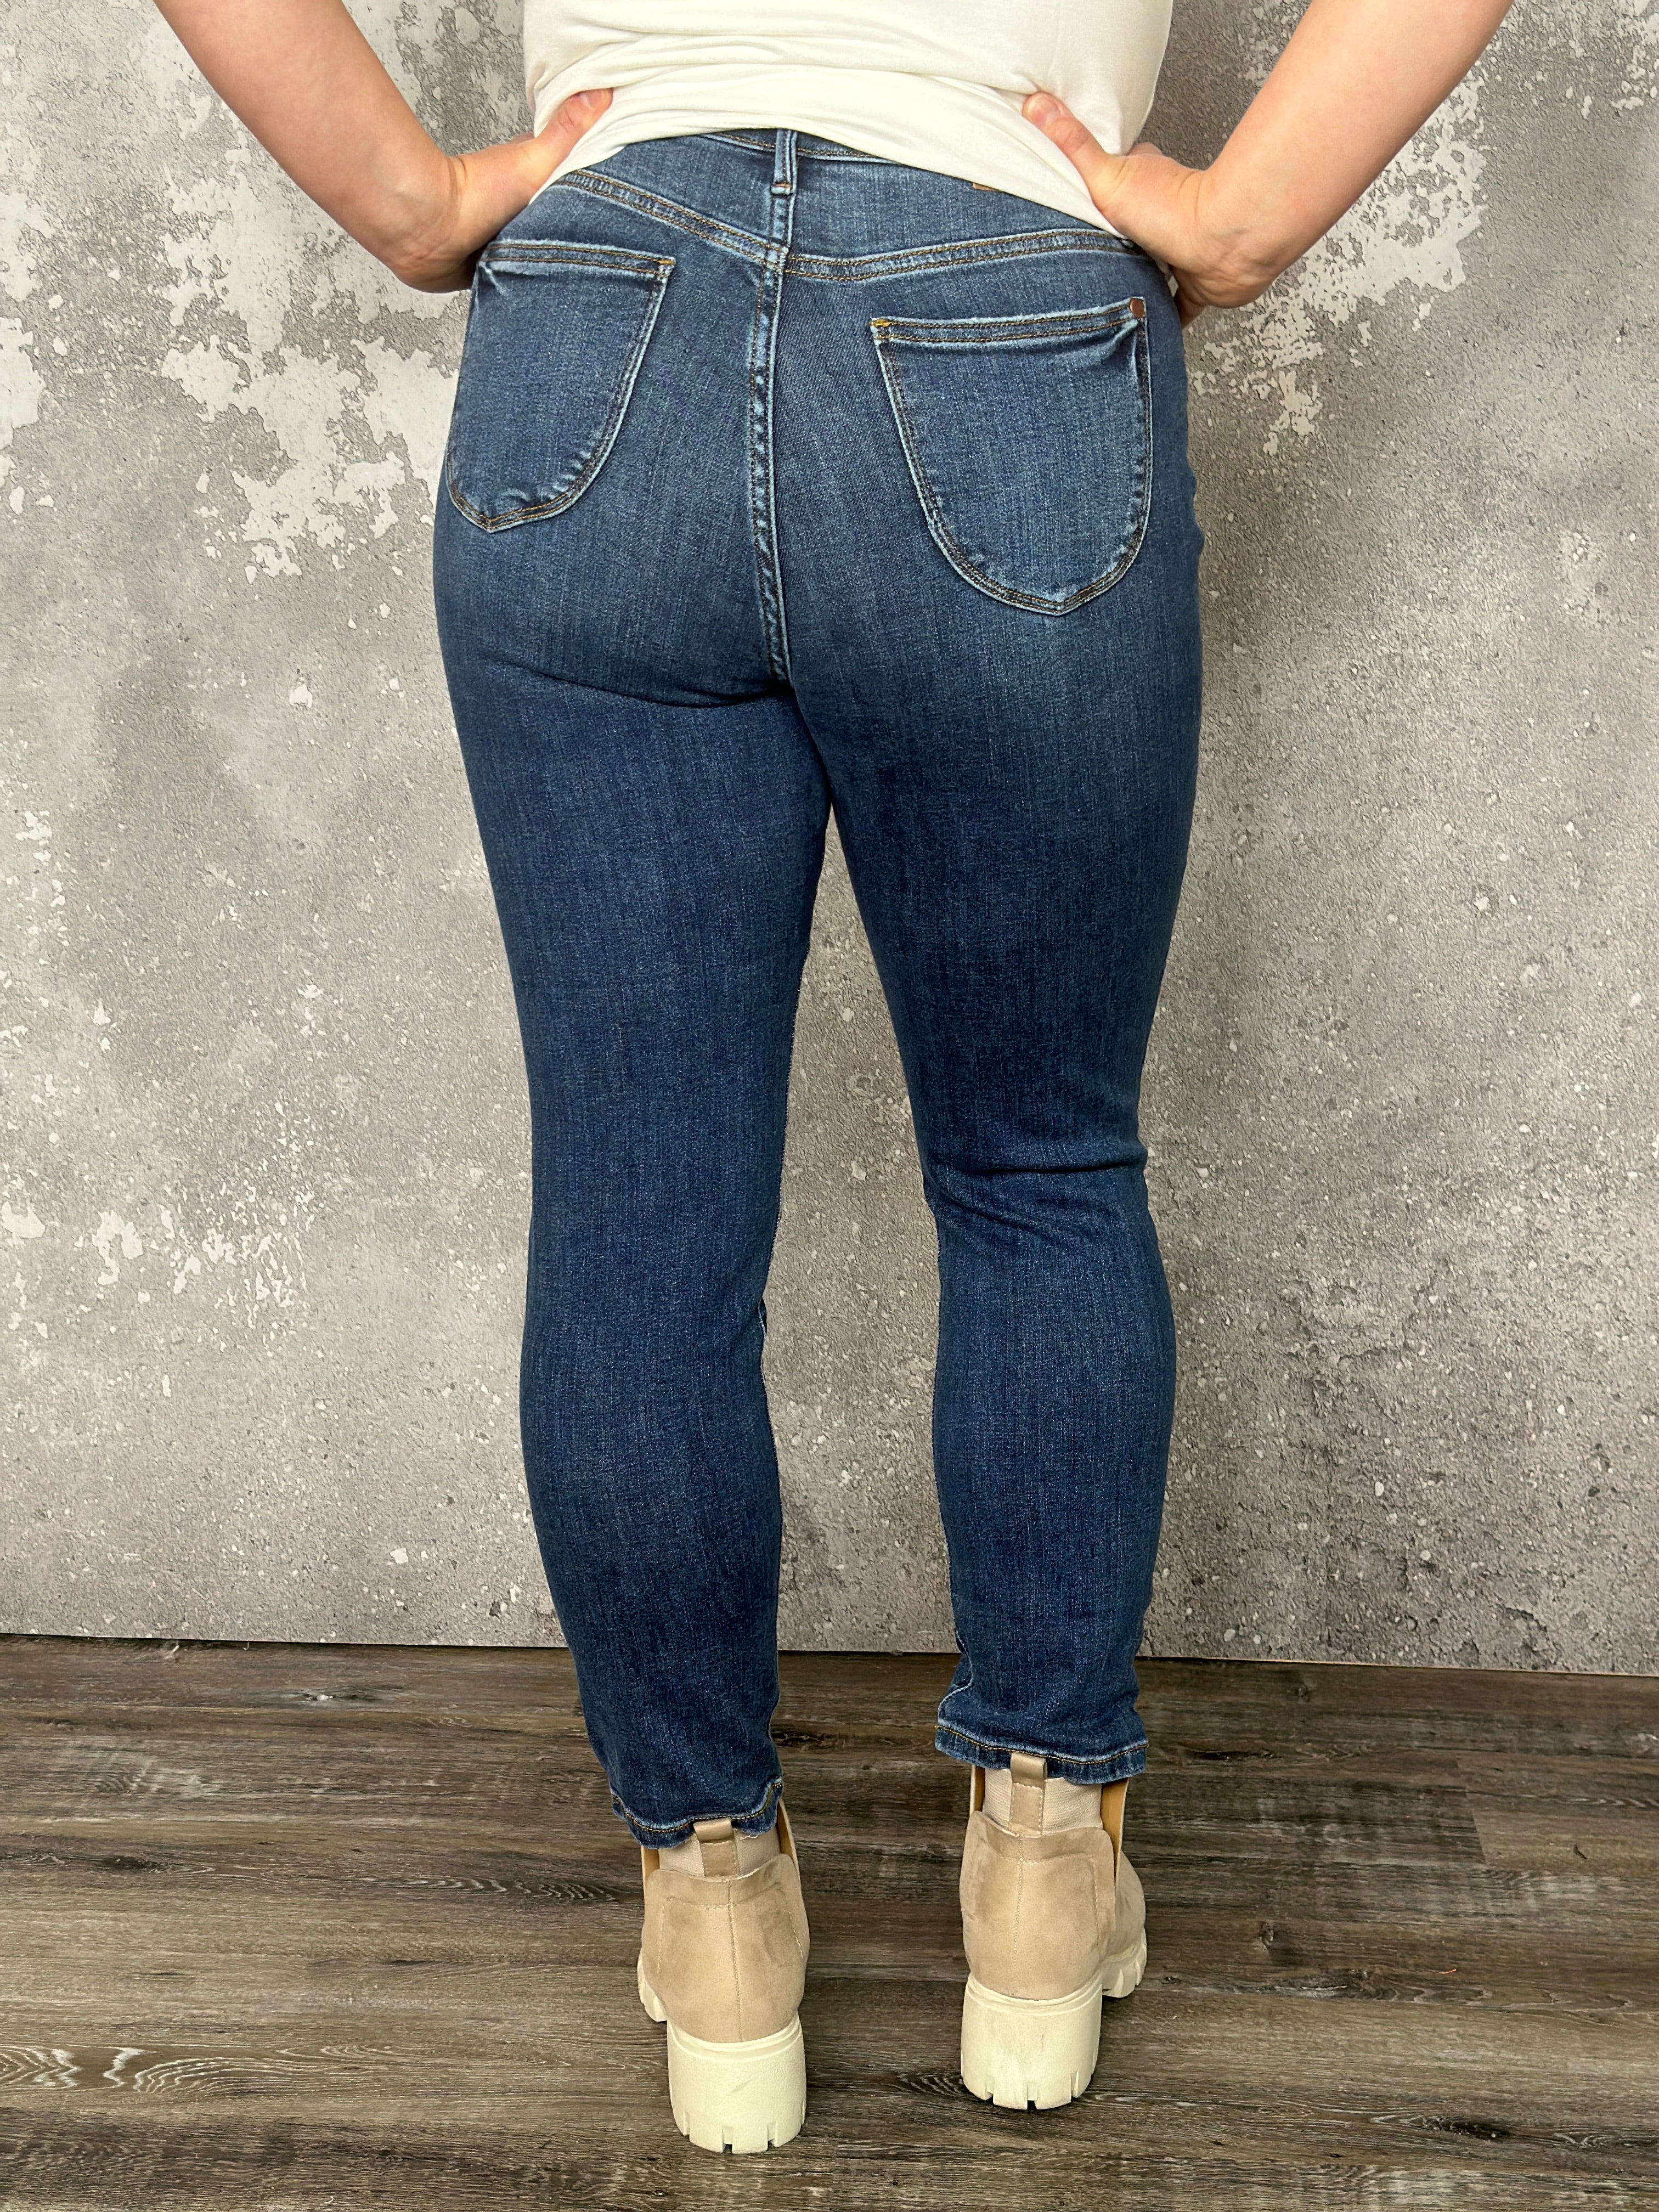 Judy Blue Slim Fit Butt Lifting Jean (sizes 25-24W) - FINAL SALE